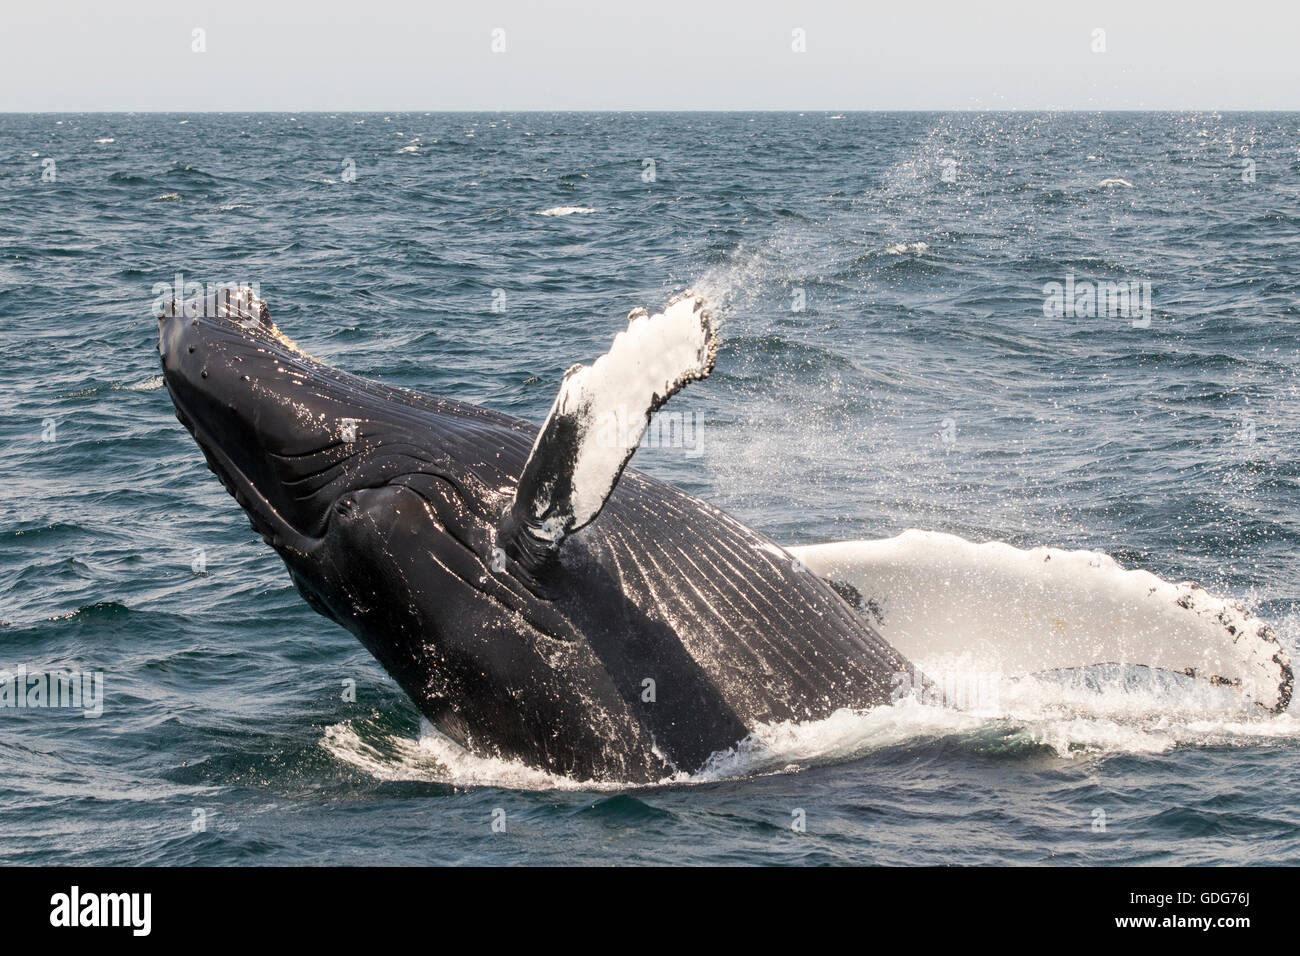 Ballena Jorobada saltando, saltando mientras ballenas cerca del Banco Stellwagen y Cape Cod. (Megaptera novaeangliae) Foto de stock